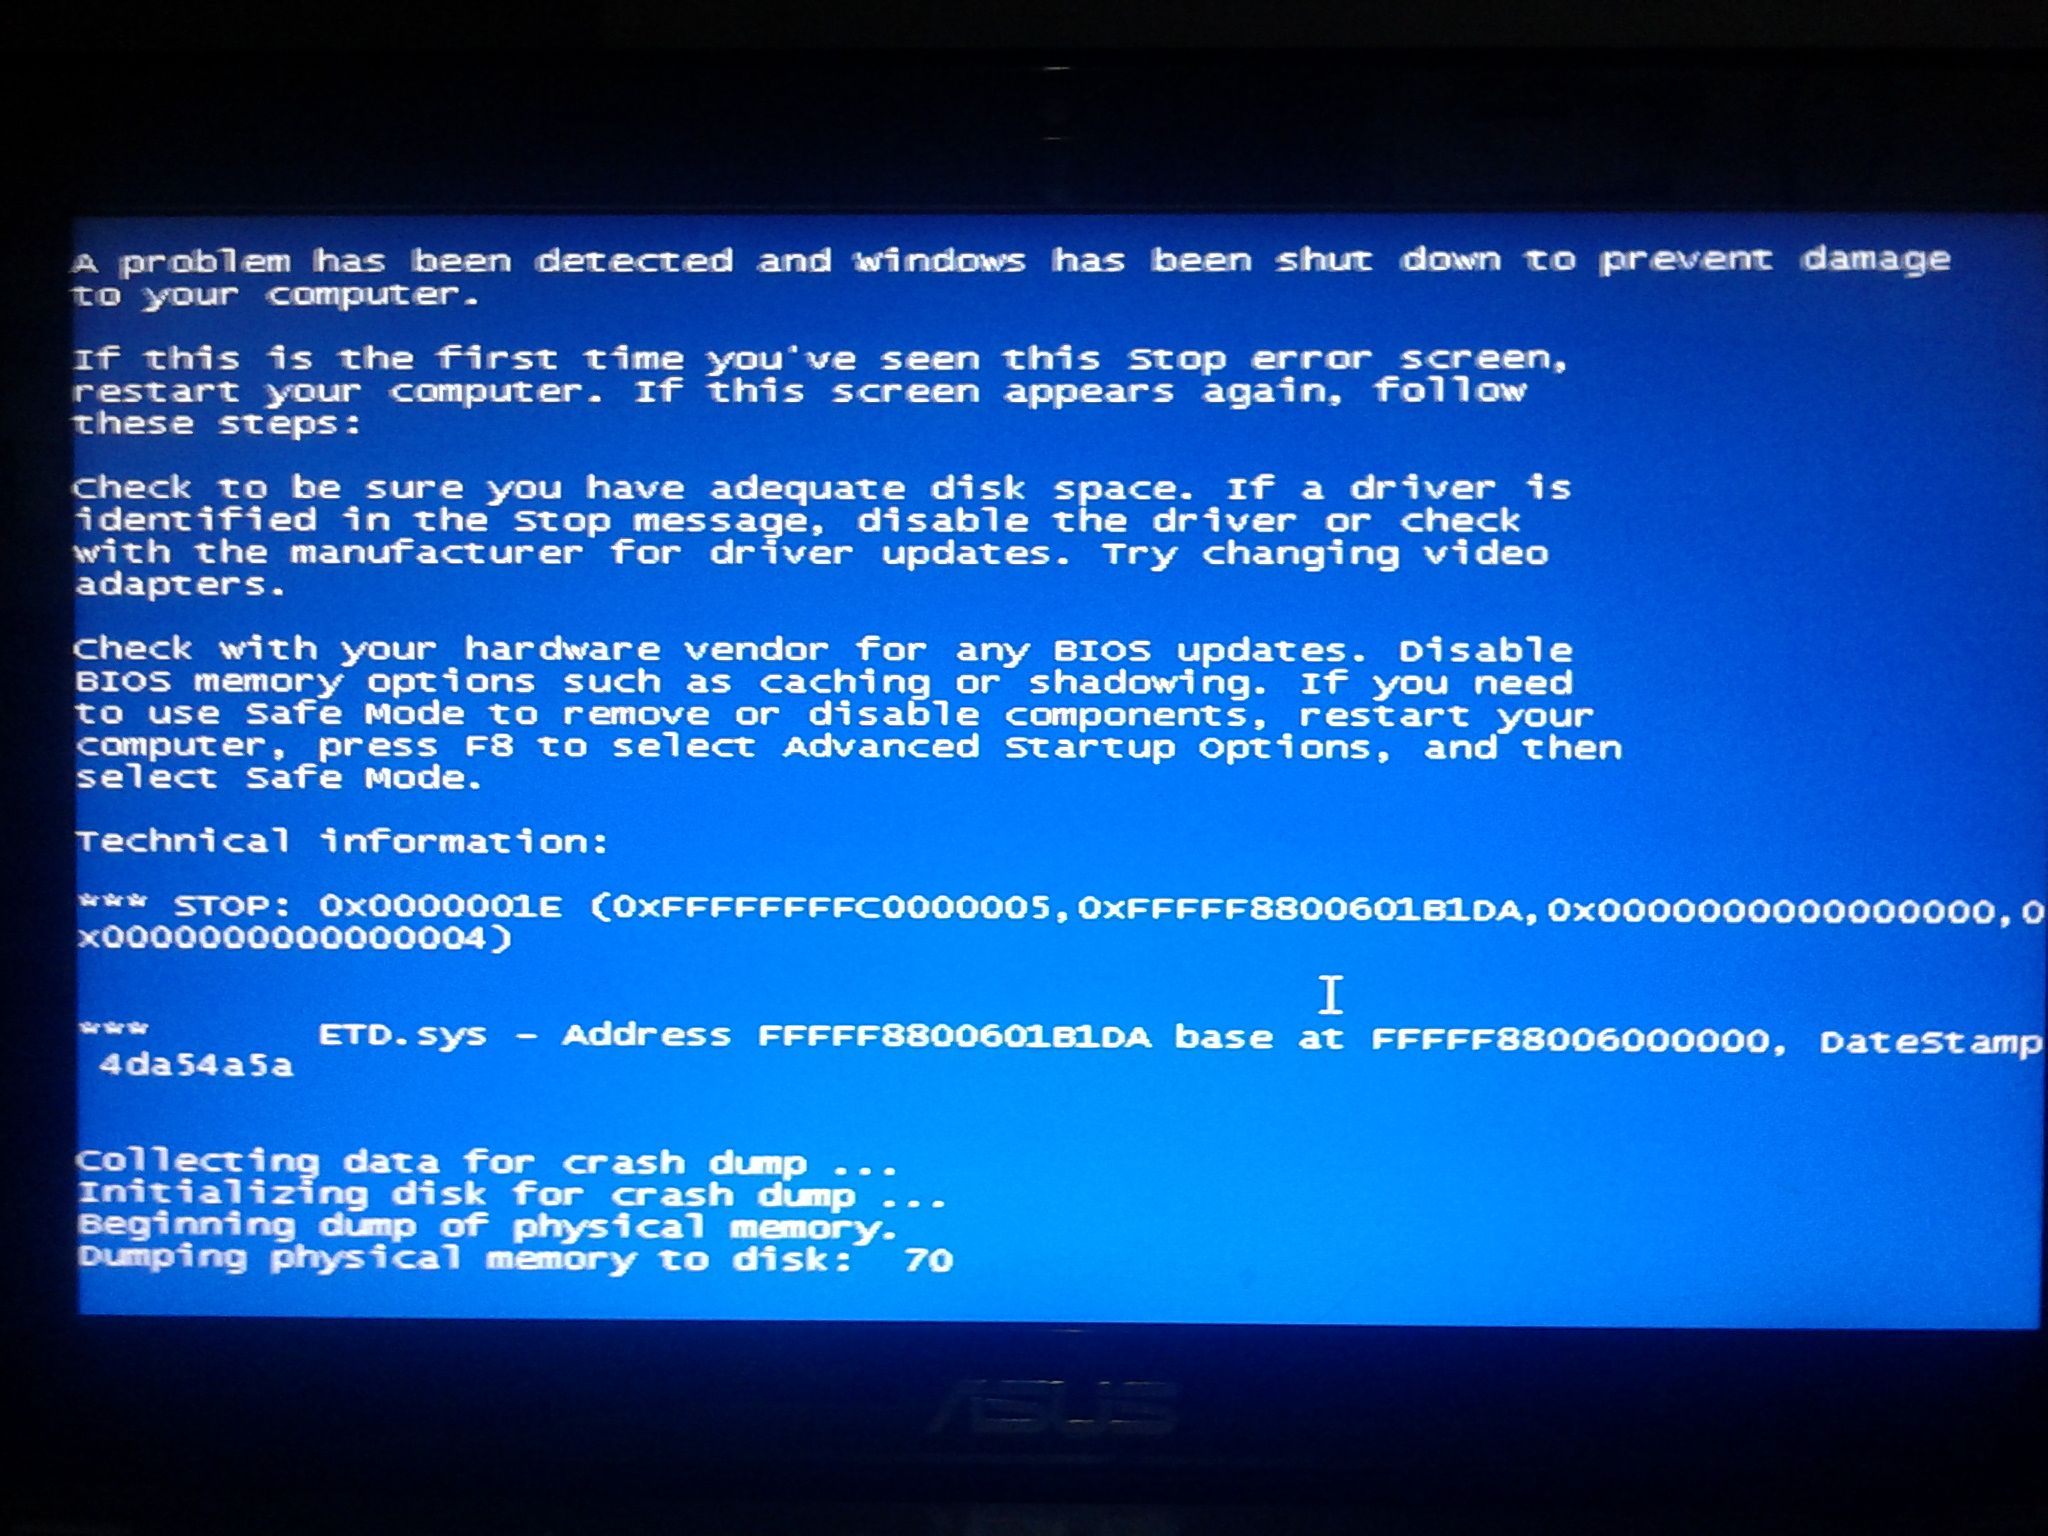 我在网站下载一个软件，打开后，然后电脑就蓝屏了。是不是这个软件有病毒？？